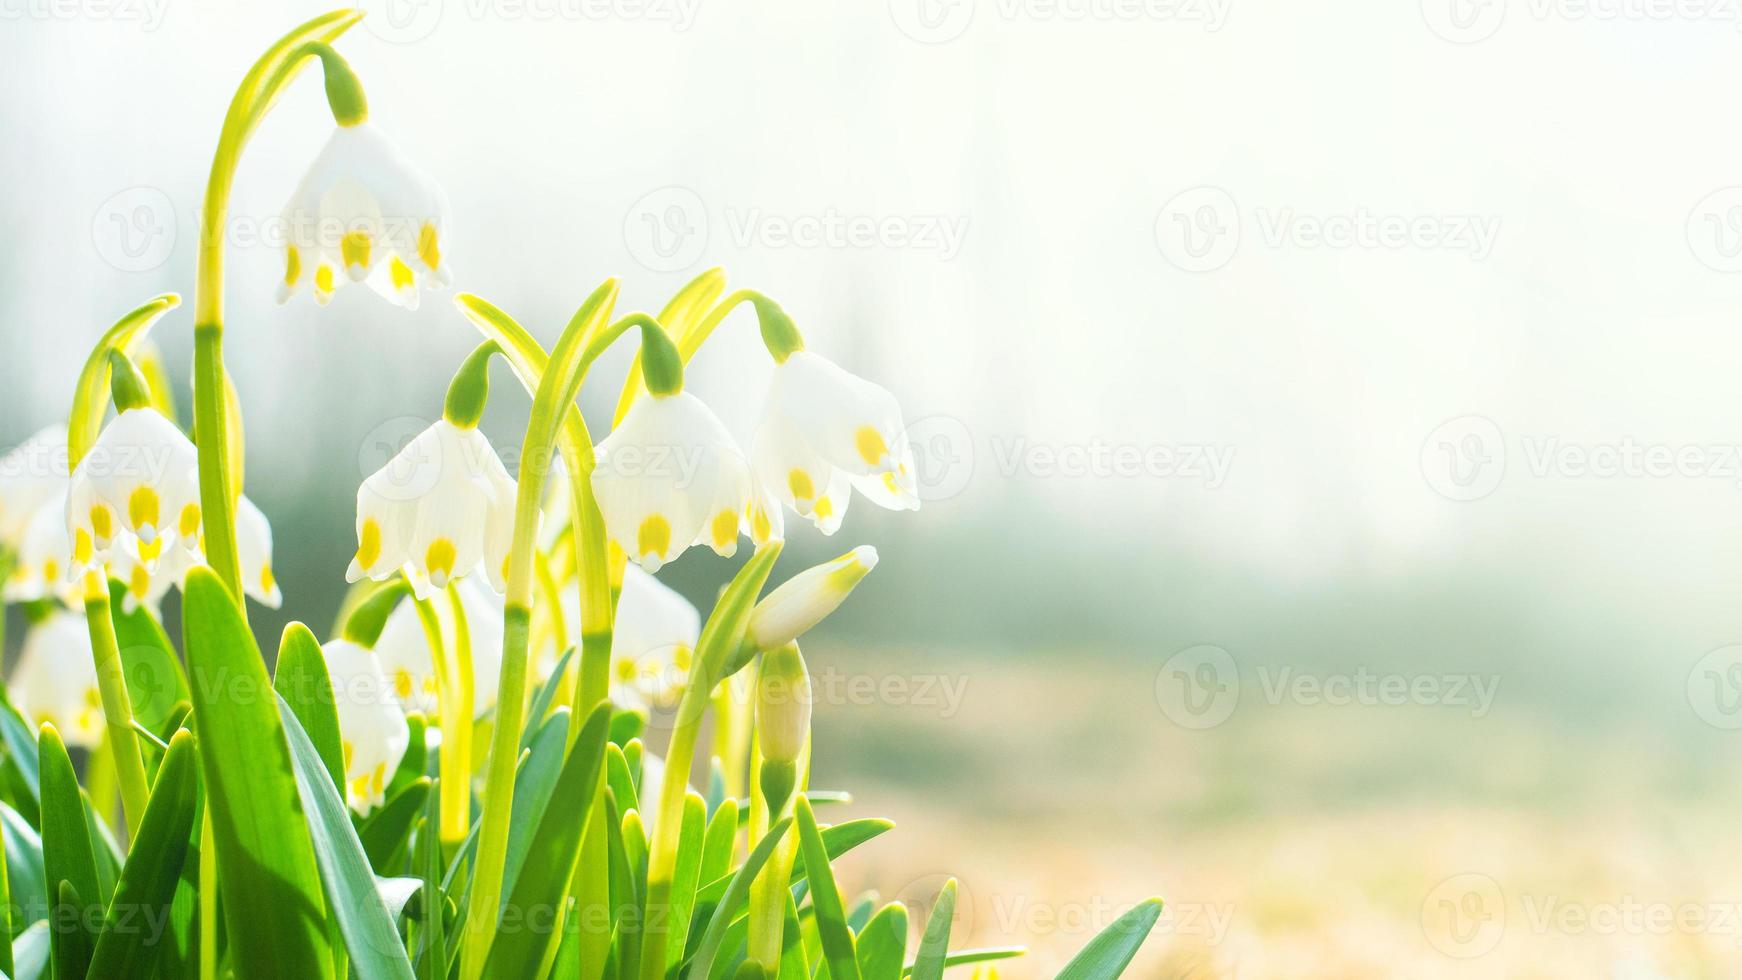 les premières fleurs du printemps, les perce-neige, symbole du réveil de la nature photo